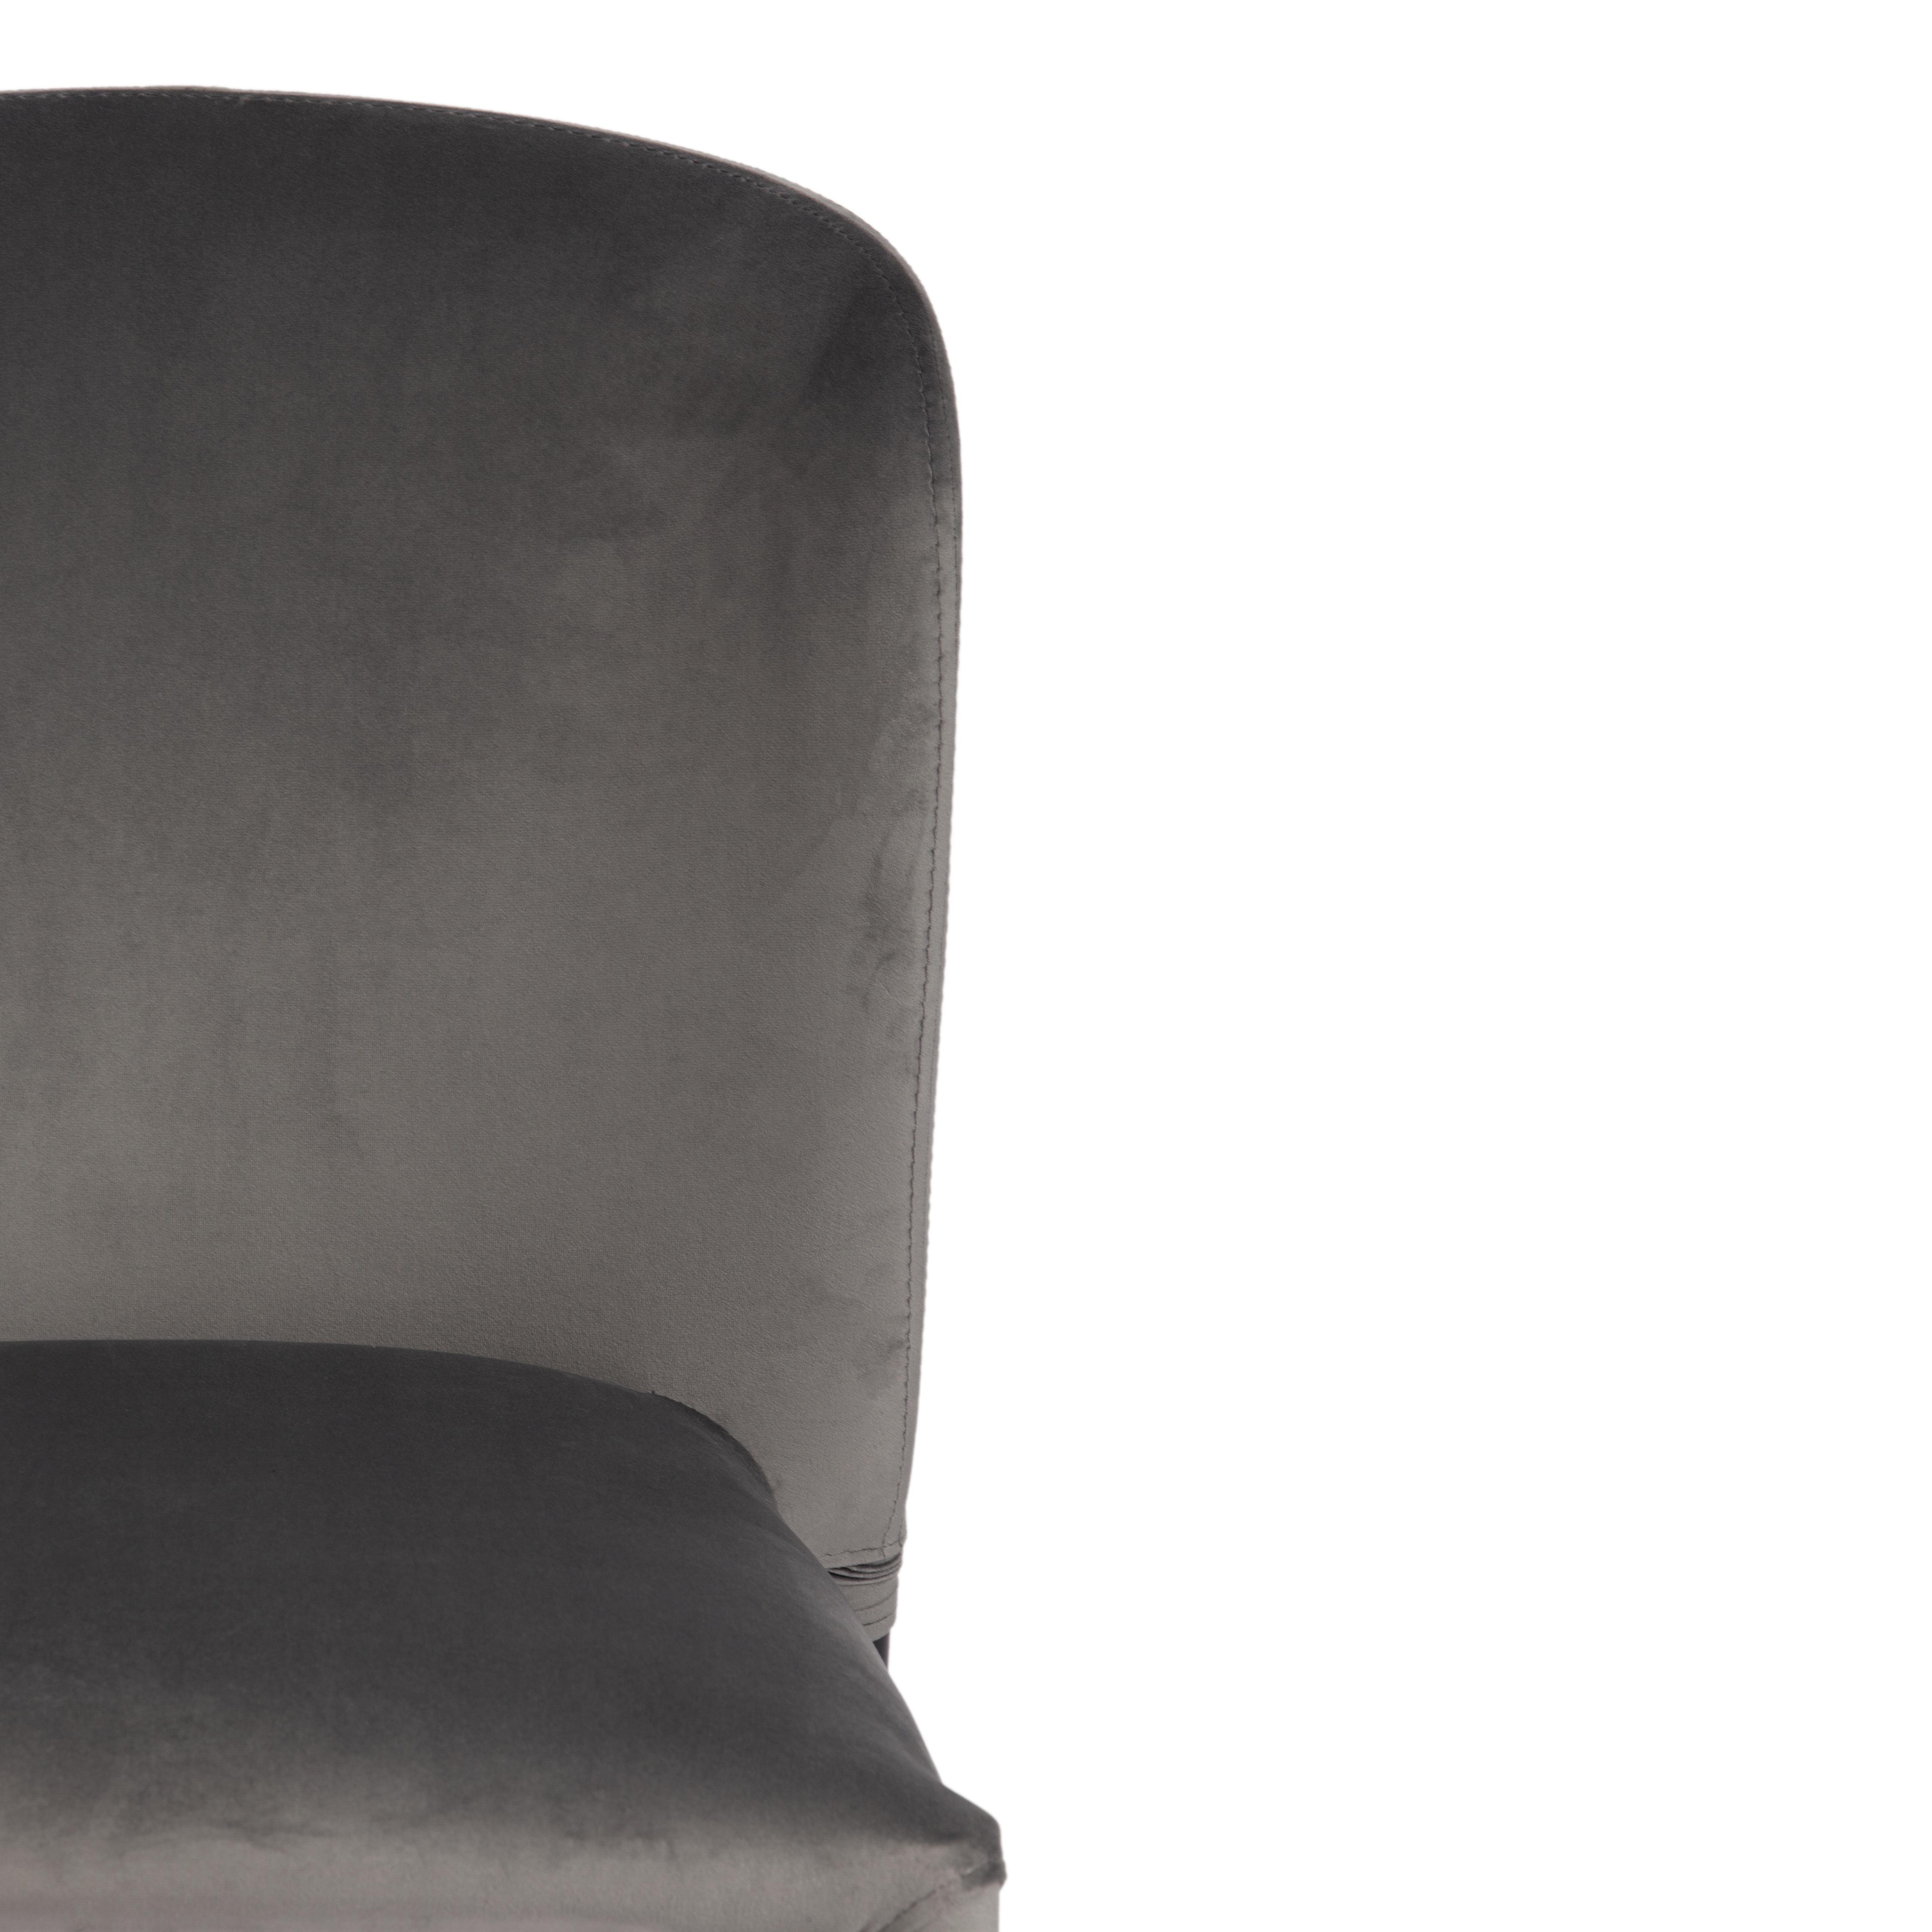 Стул ALVOR (mod. 715) ткань/металл, 48х65х86 см, высота до сиденья 51 см, серый barkhat 26/черный